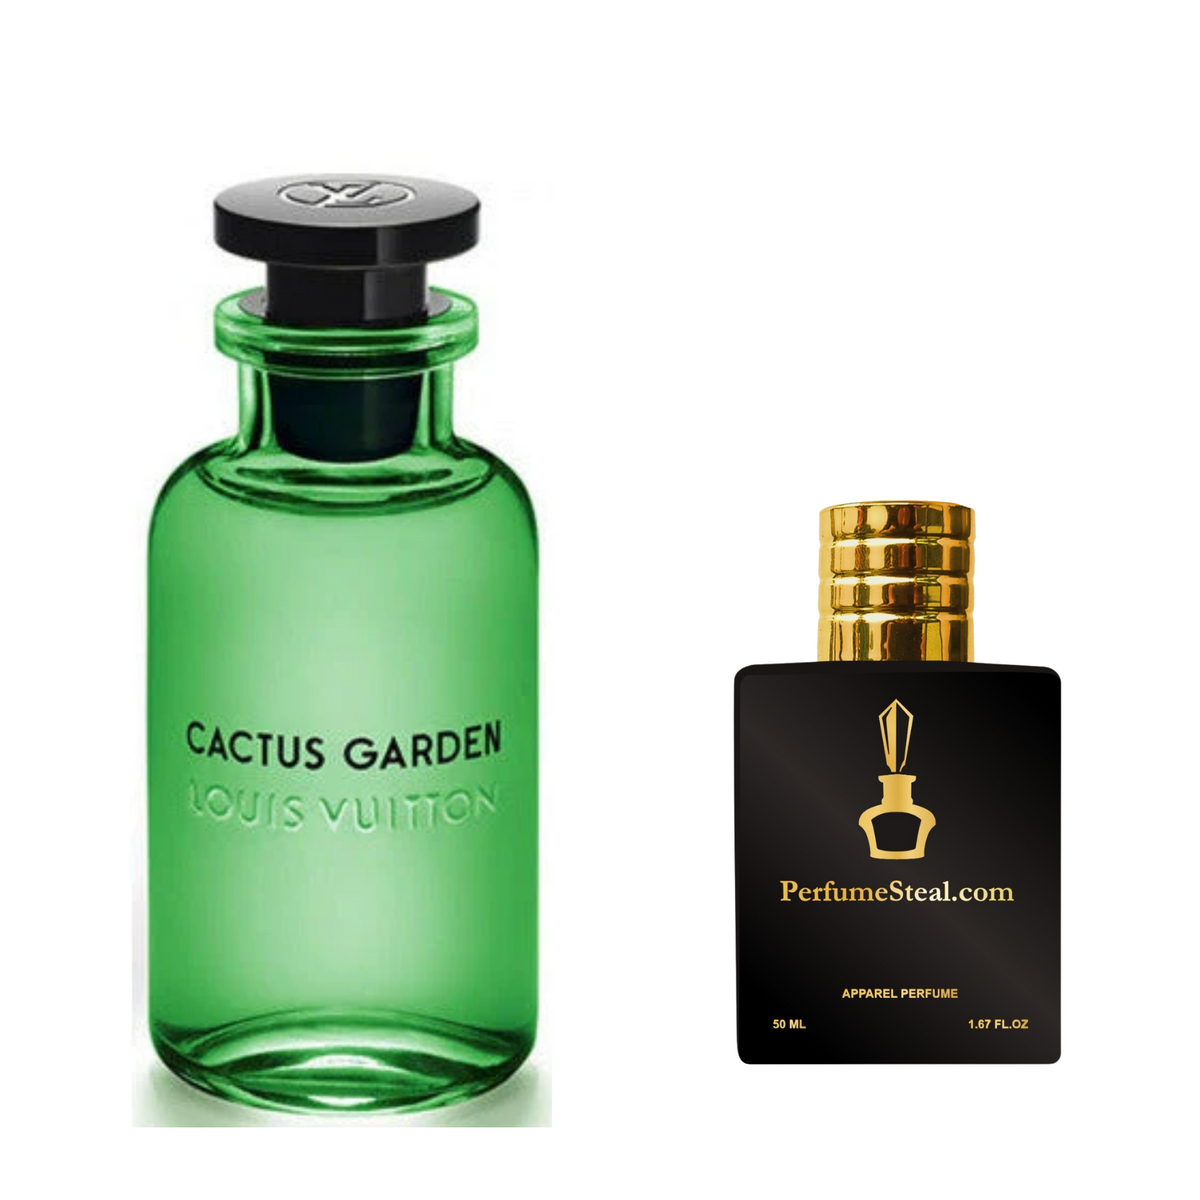 Cactus Garden by Louis Vuitton type Perfume –